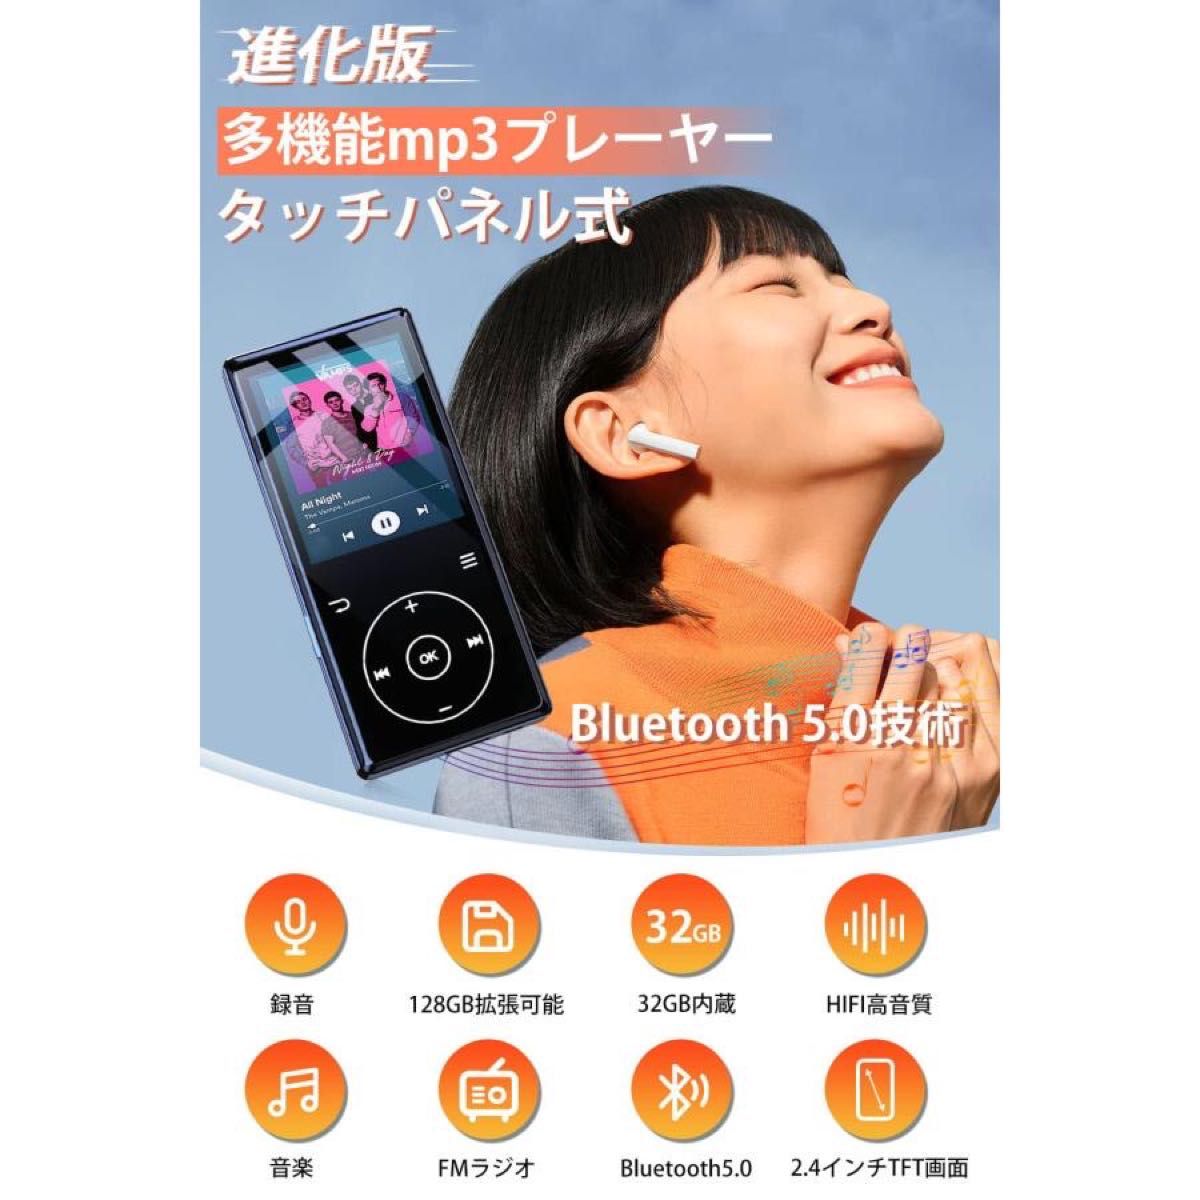 mp3プレーヤー 32GB 超大容量 Bluetooth5.0 音楽プレーヤー HIFI高音質 スピーカー タッチパネル 小型軽量